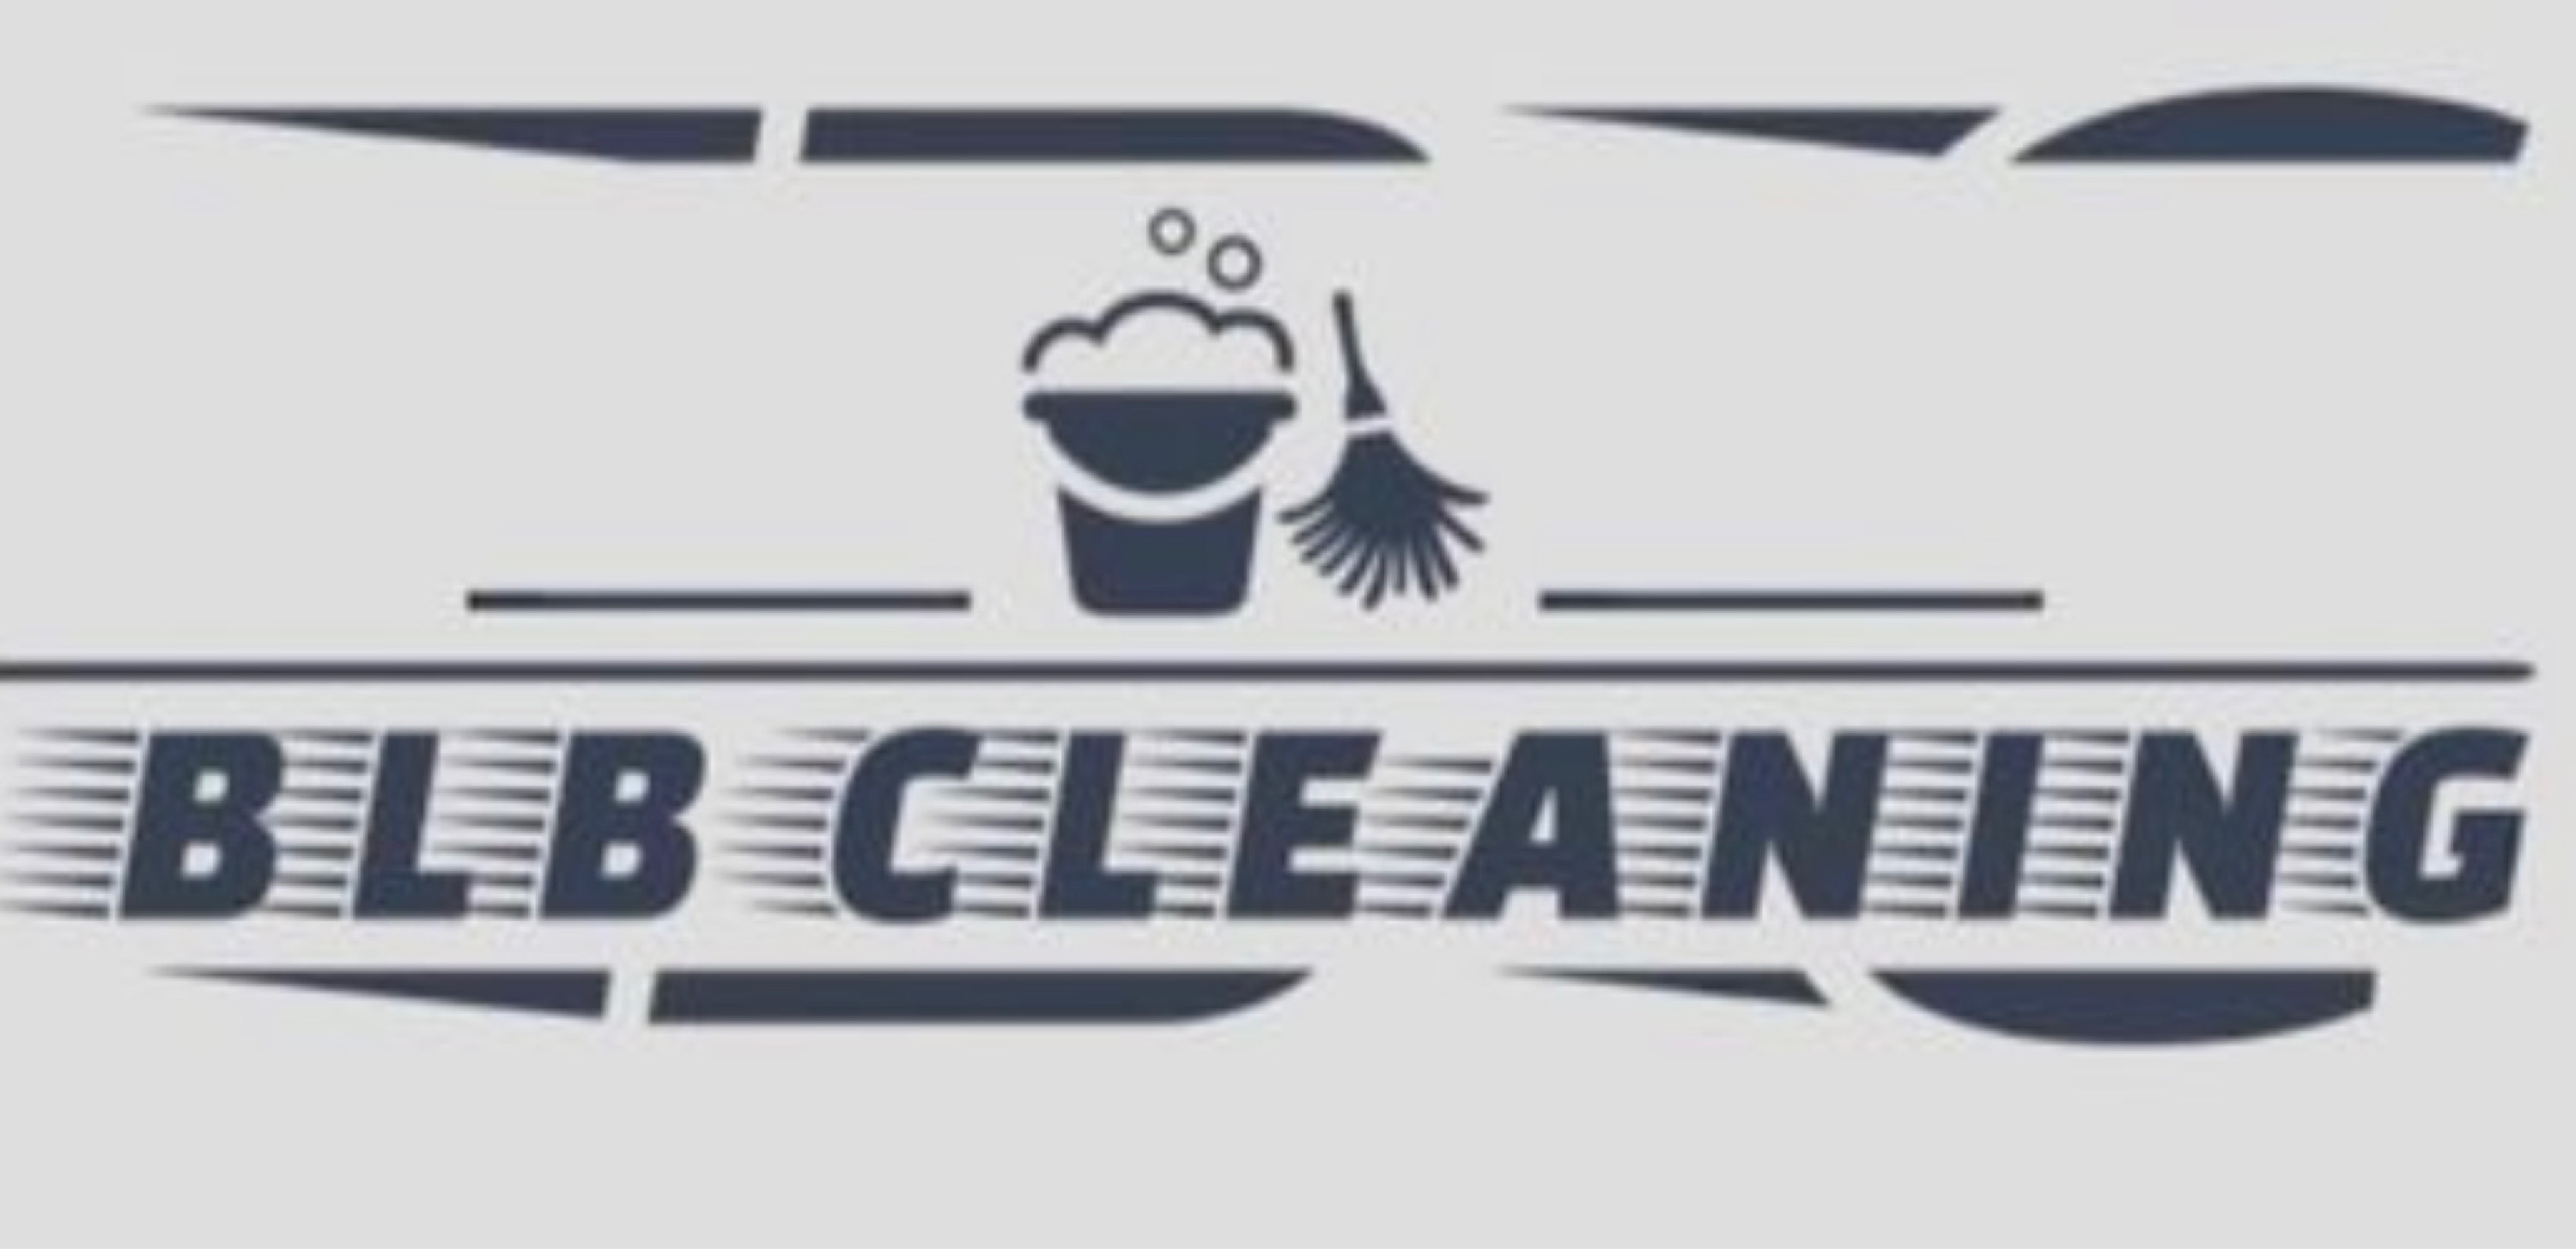 BLB Cleaning Logo